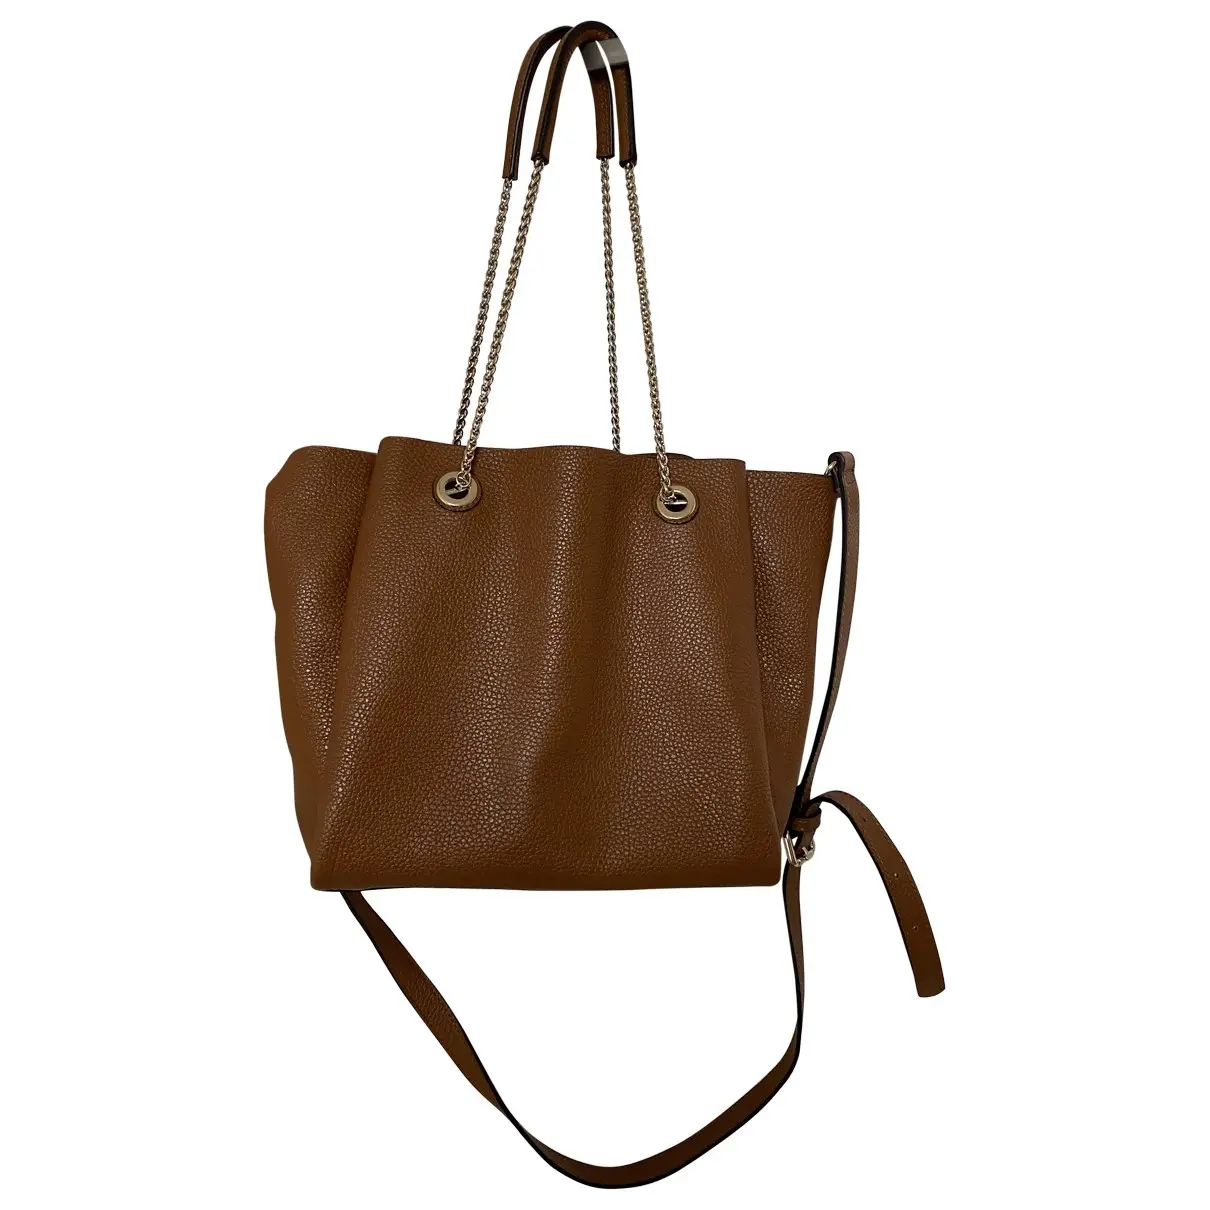 Leather handbag MINELLI